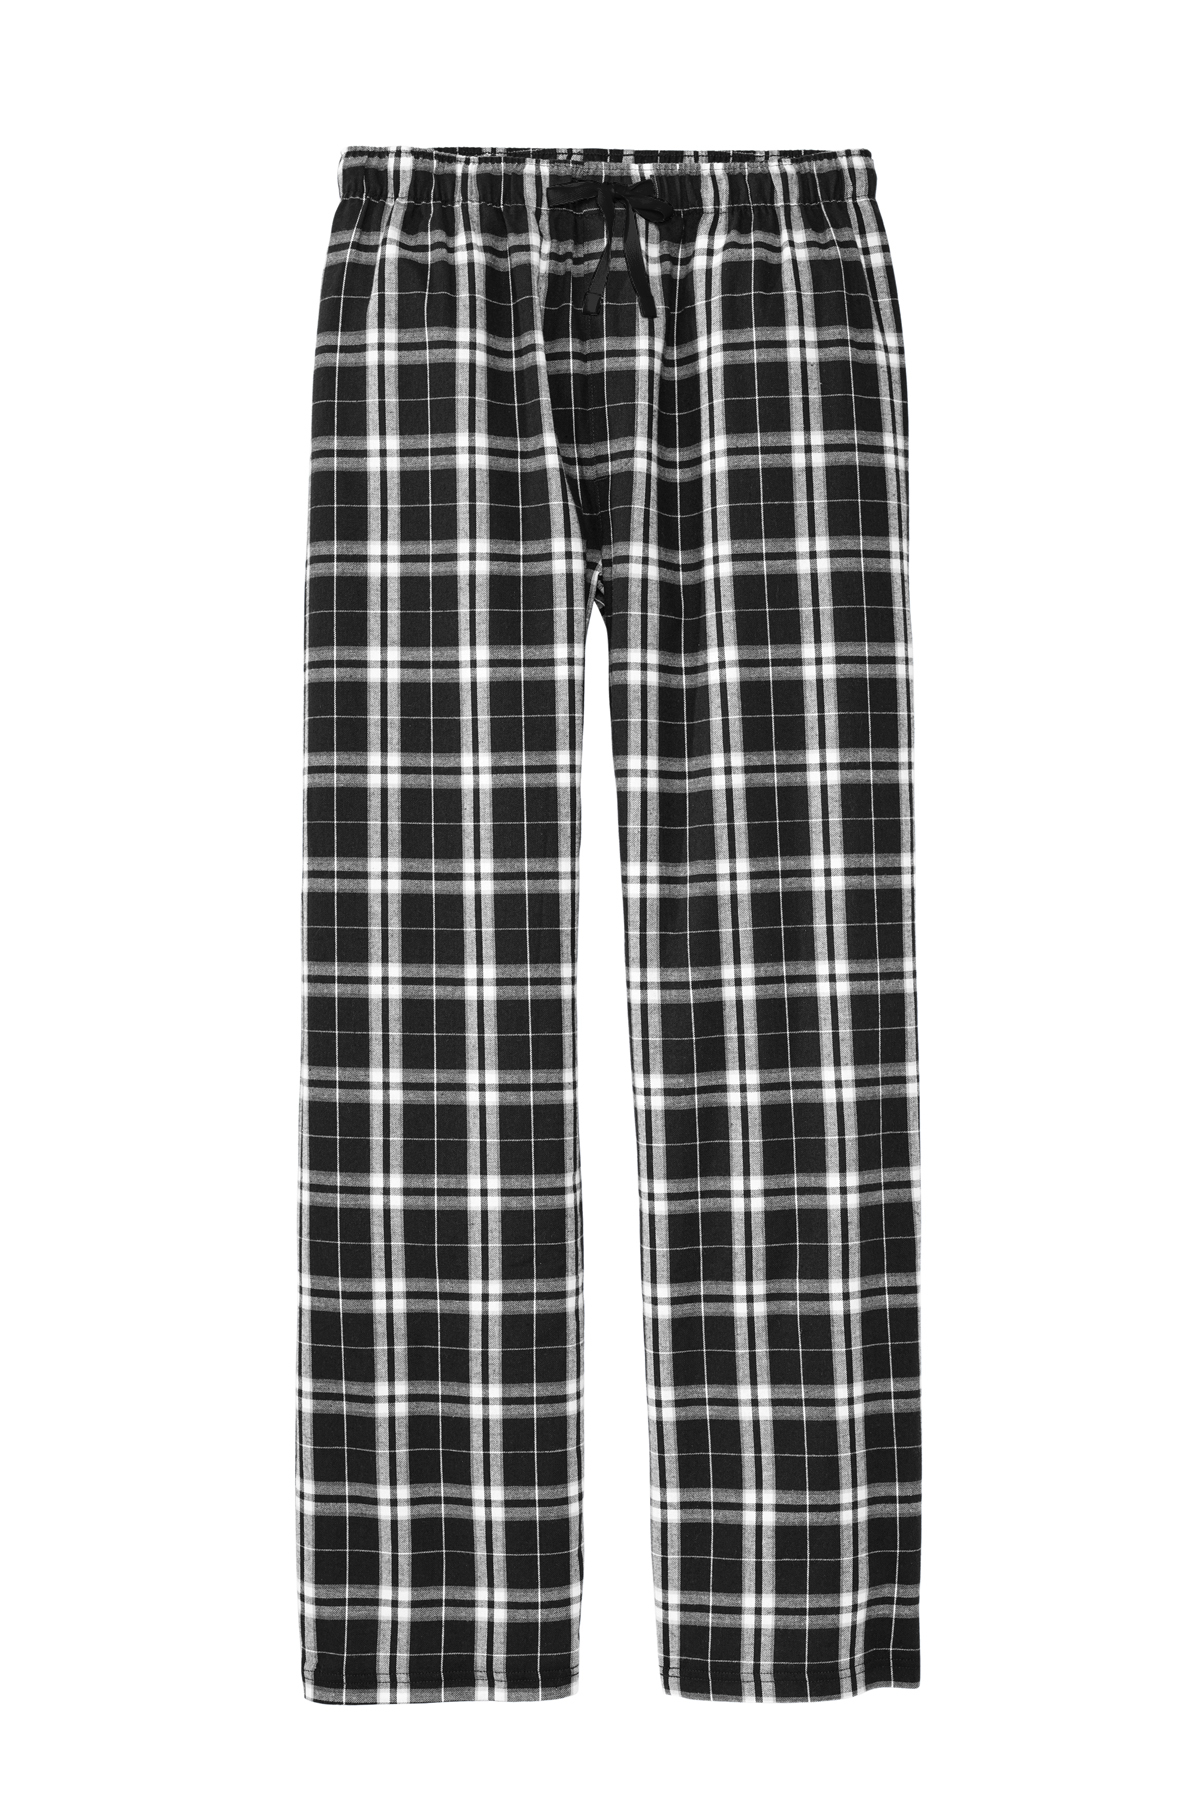 District Flannel Plaid Pant | Product | SanMar